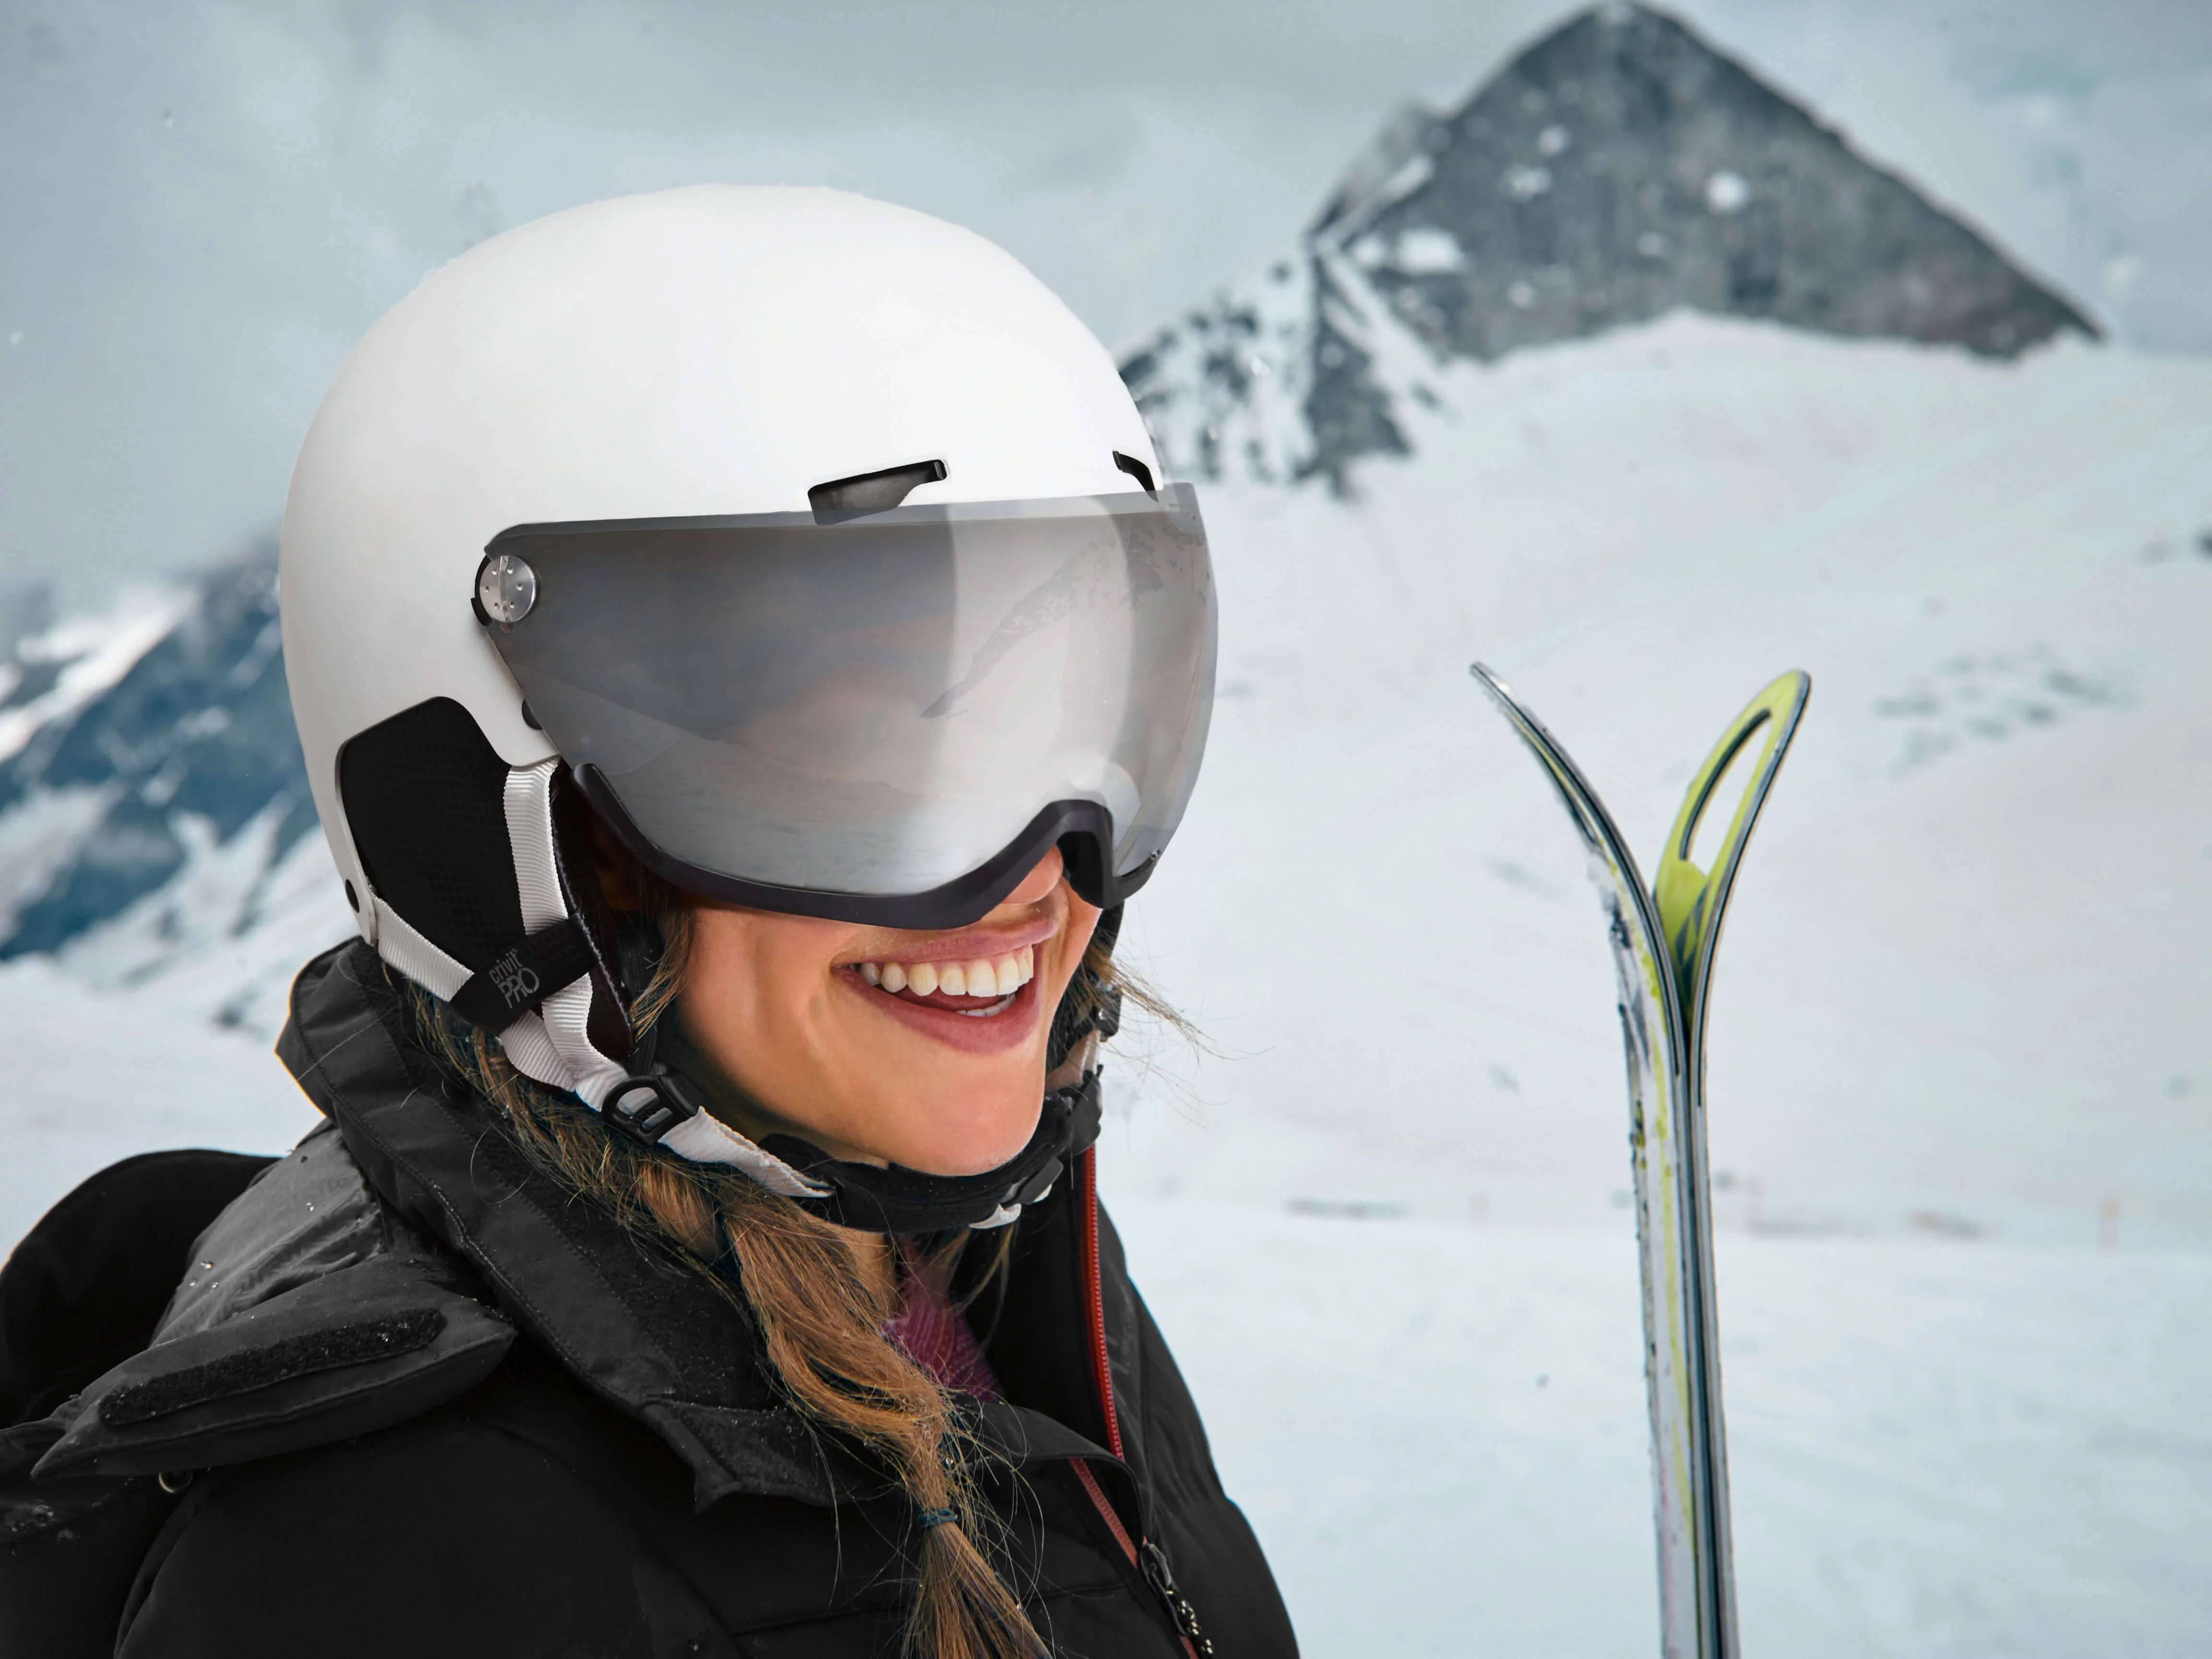 Skikleding en wintersportartikelen – Klaar voor de piste